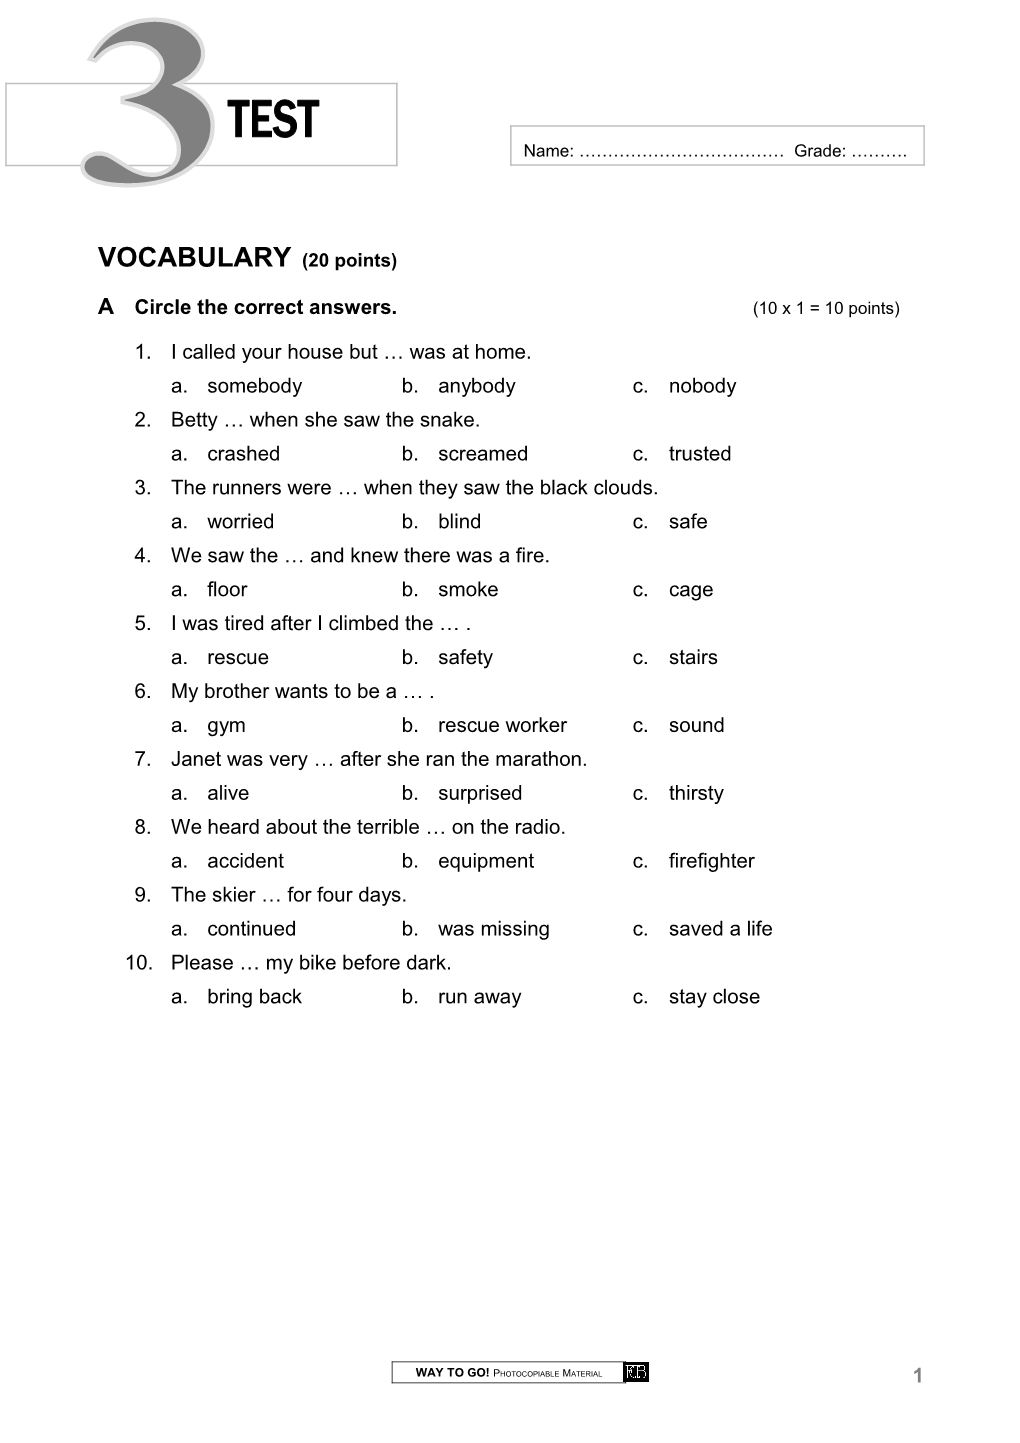 Vocabulary (20 Points)